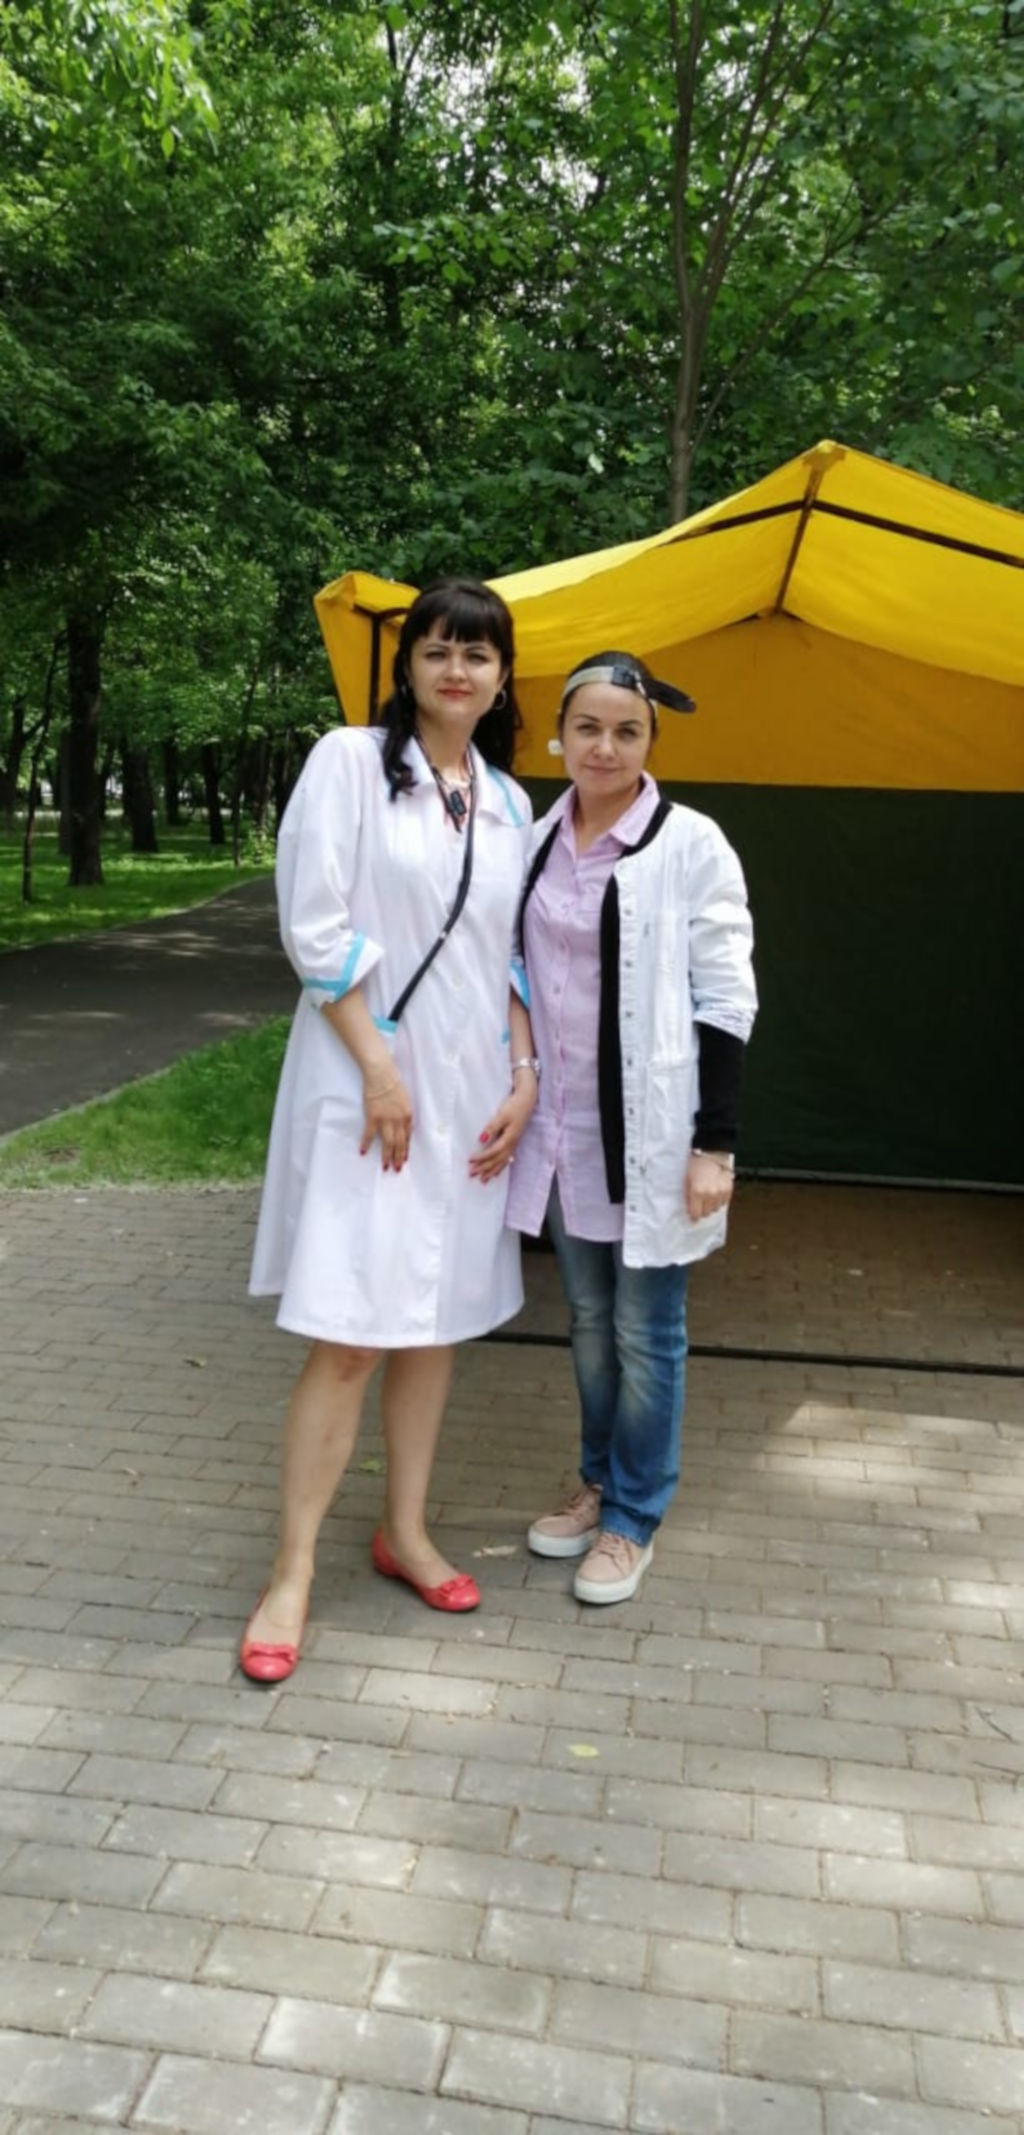 1 июня 2019 г. в Перовском сквере наши доктора, как и в прошлом году активно начали работать в Московских парках, оказывая консультативную помощь всем желающим москвичам.